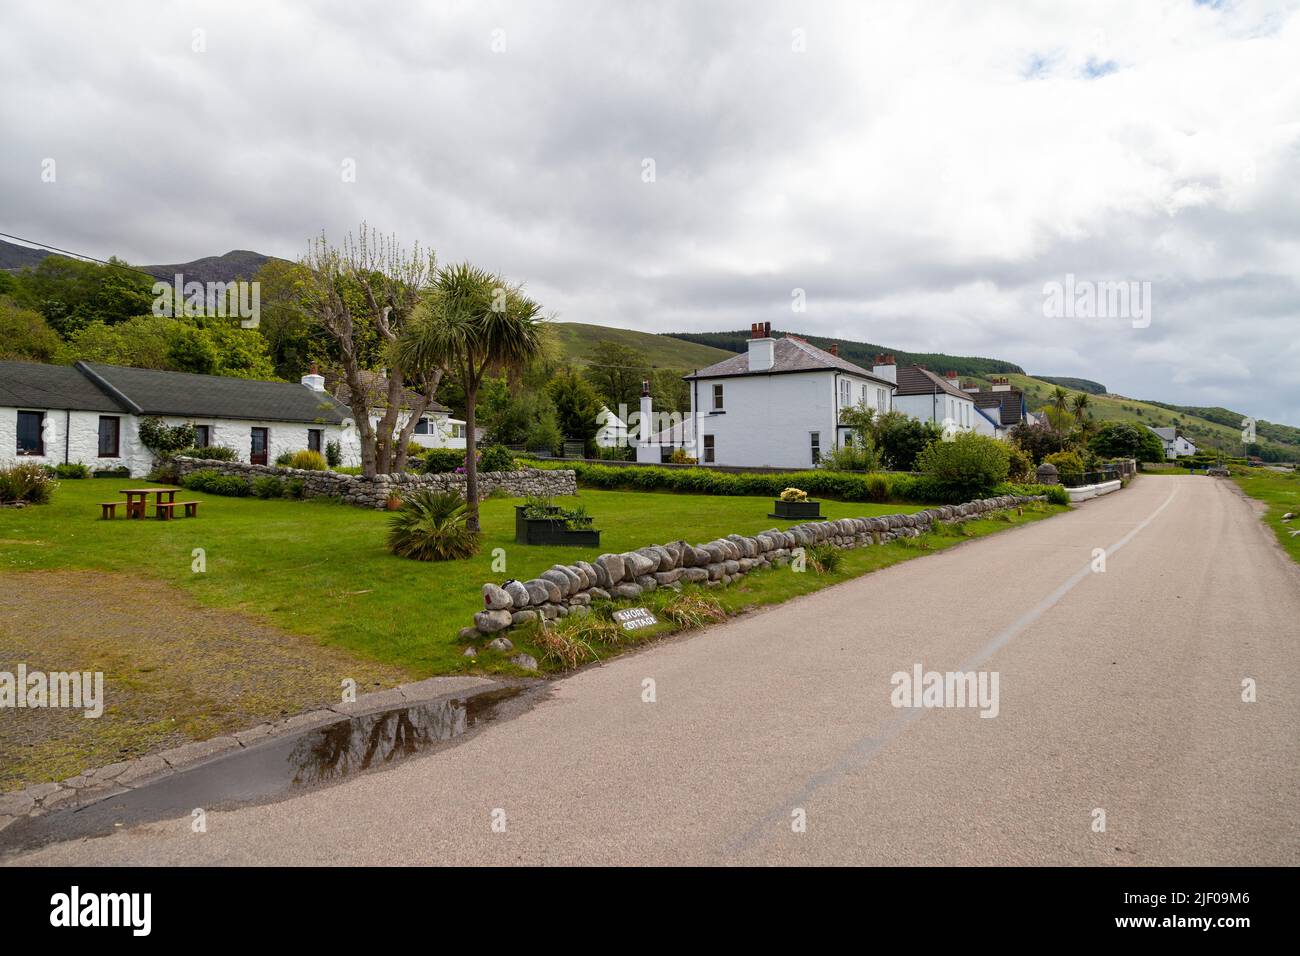 La carretera A841 que pasa por el pueblo de Pirnmill, isla de Arran. Foto de stock